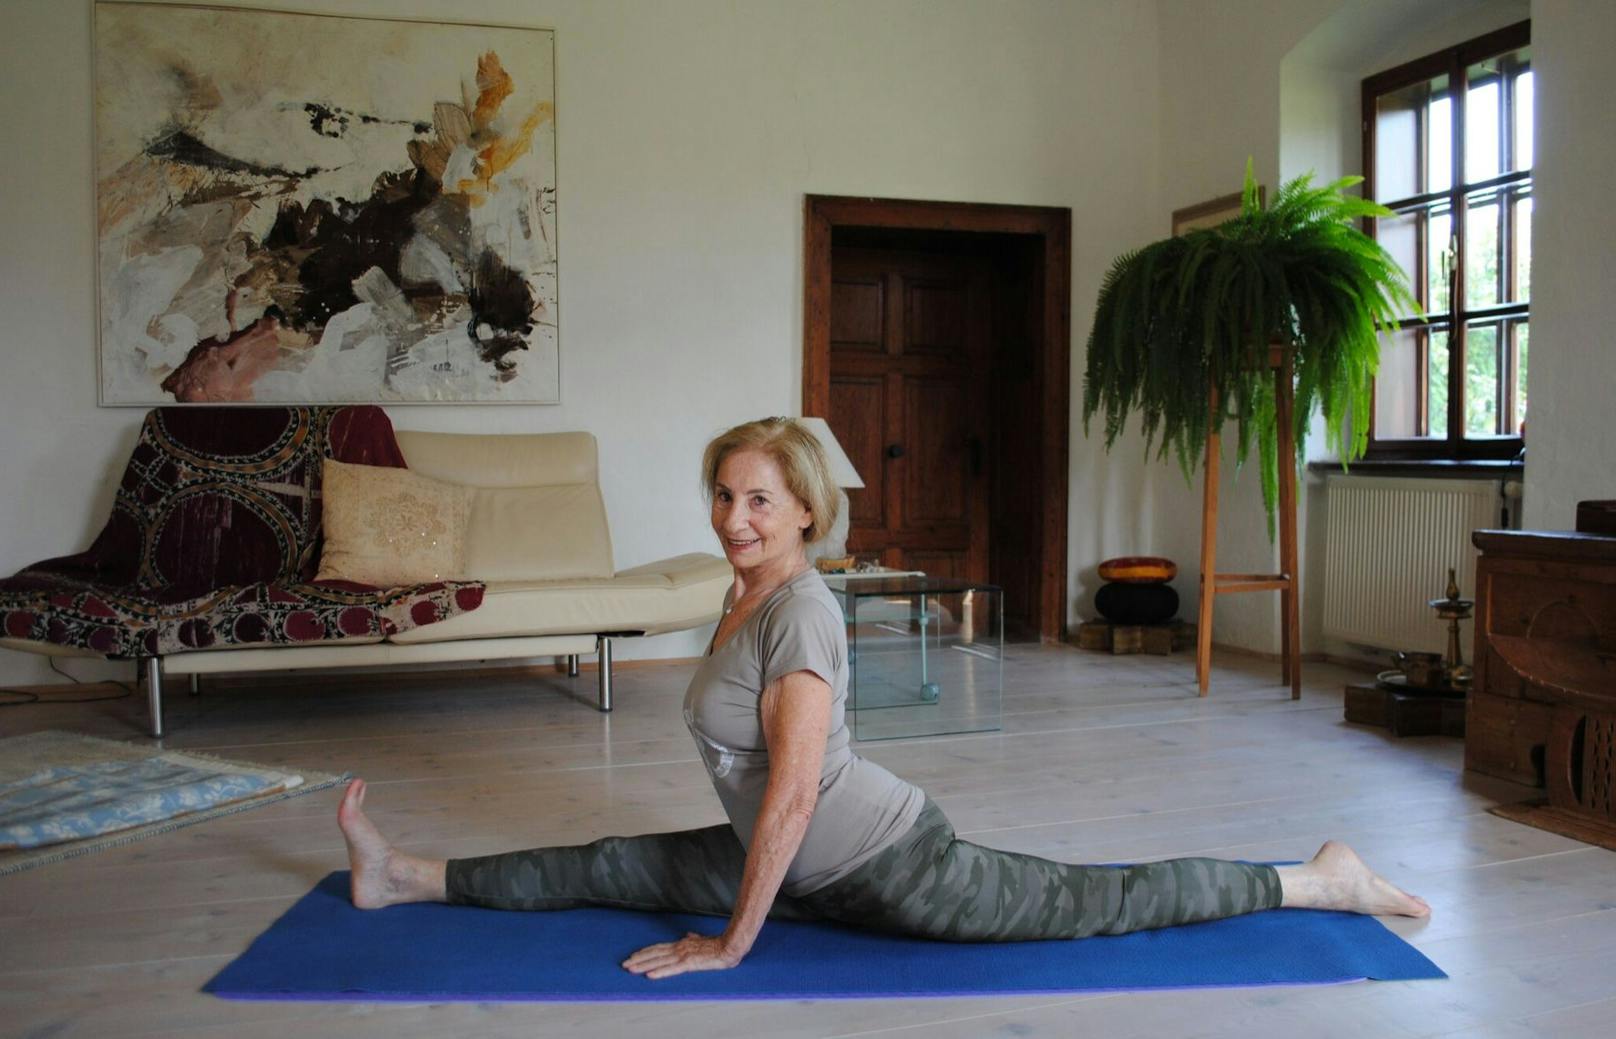 Gr-Ätsch! Yoga hält Oma (86) jung